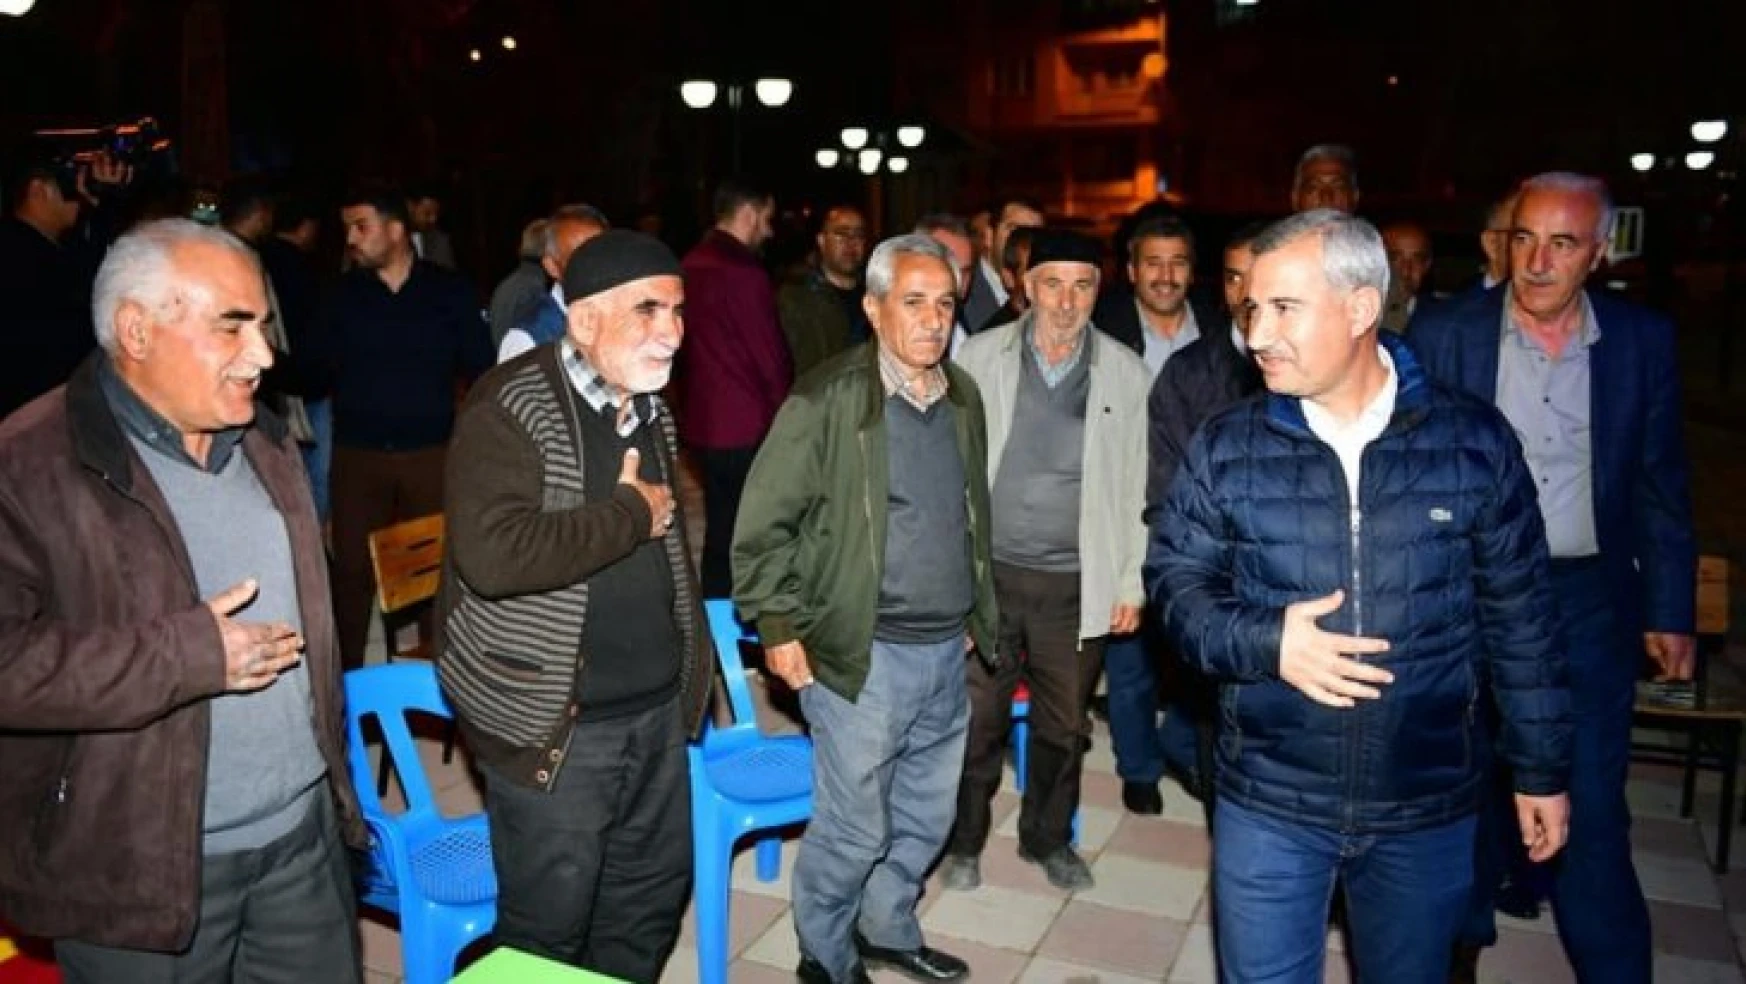 Başkan Çınar, Dilek sakinleriyle bir araya geldi